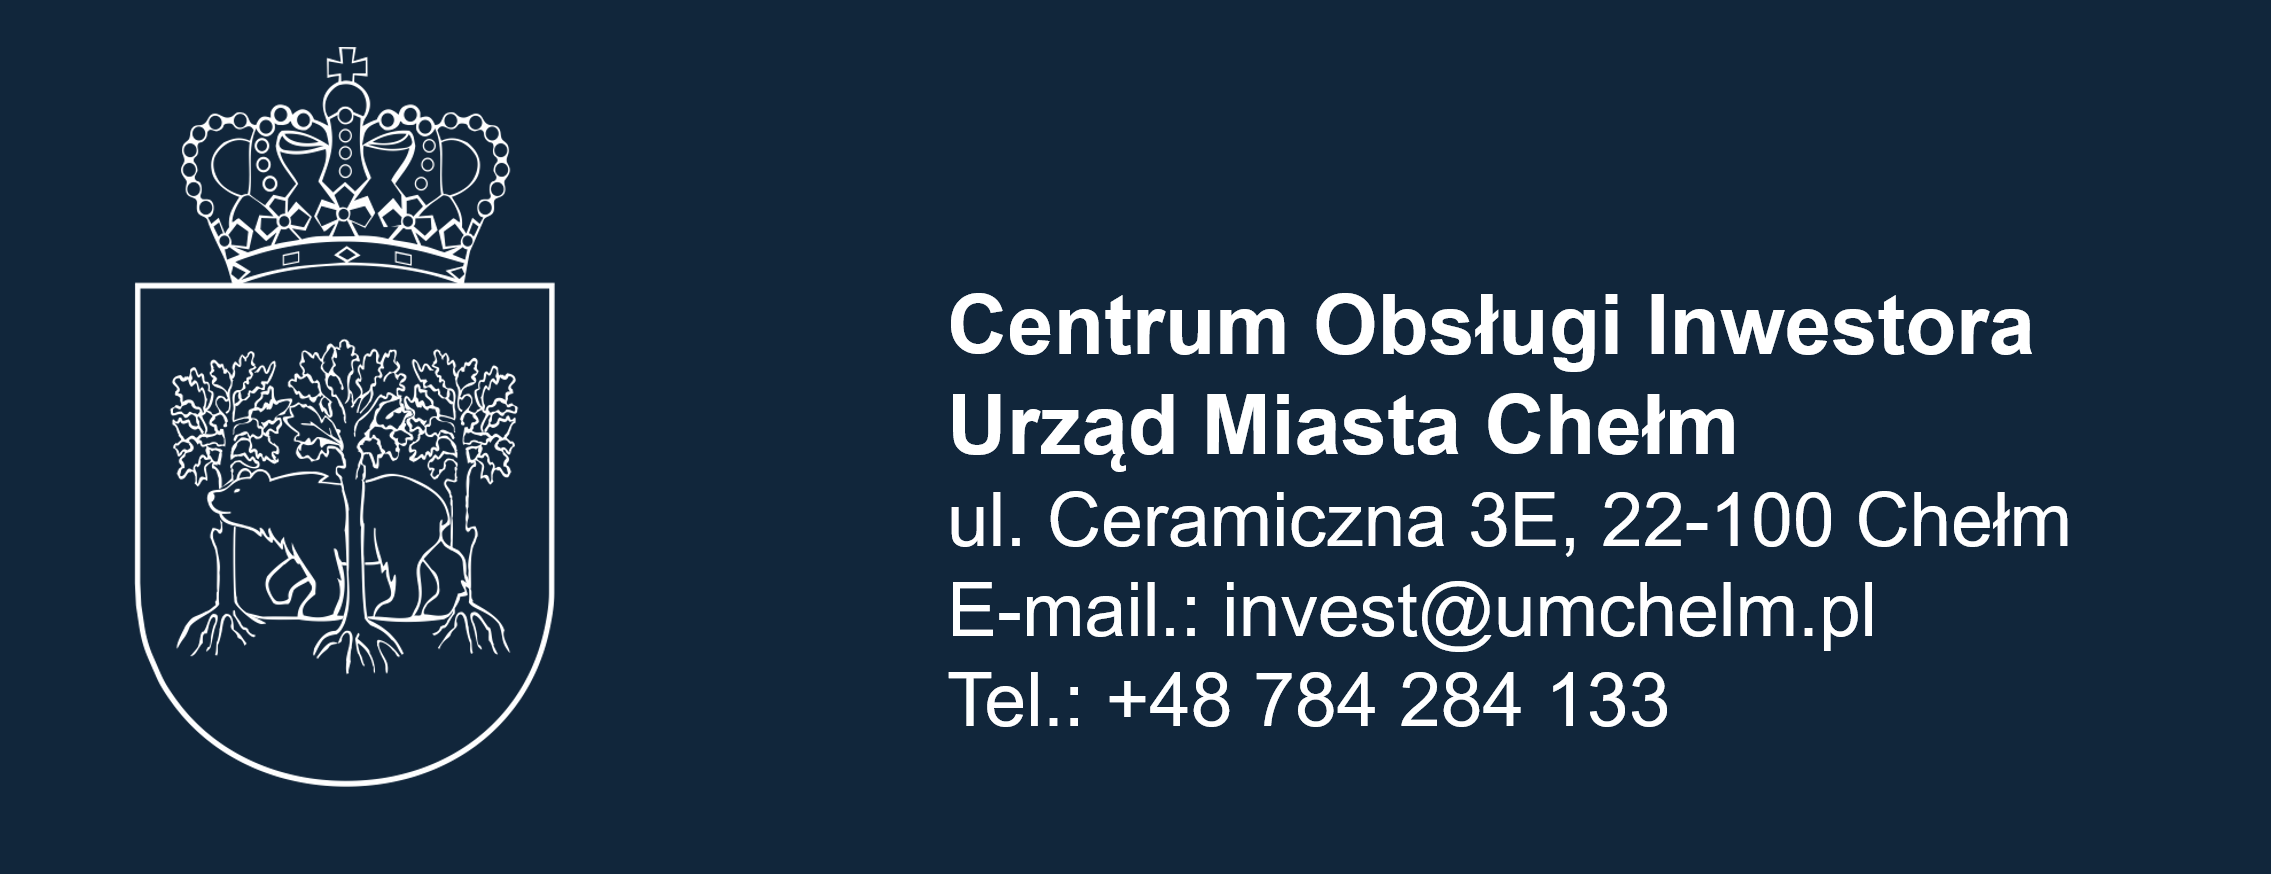 Centrum Obsługi Inwestora - Miasto Chełm